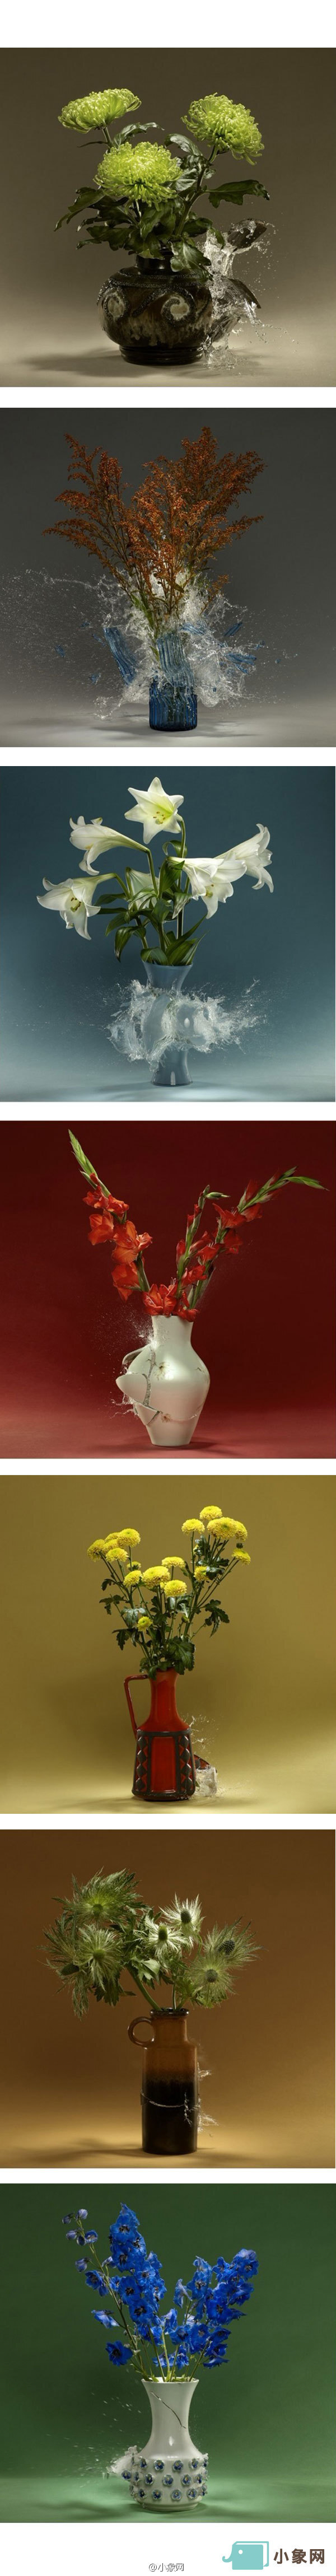 丹麦摄影师ken harmann利用高速快门,记录下了花瓶碎裂的瞬间